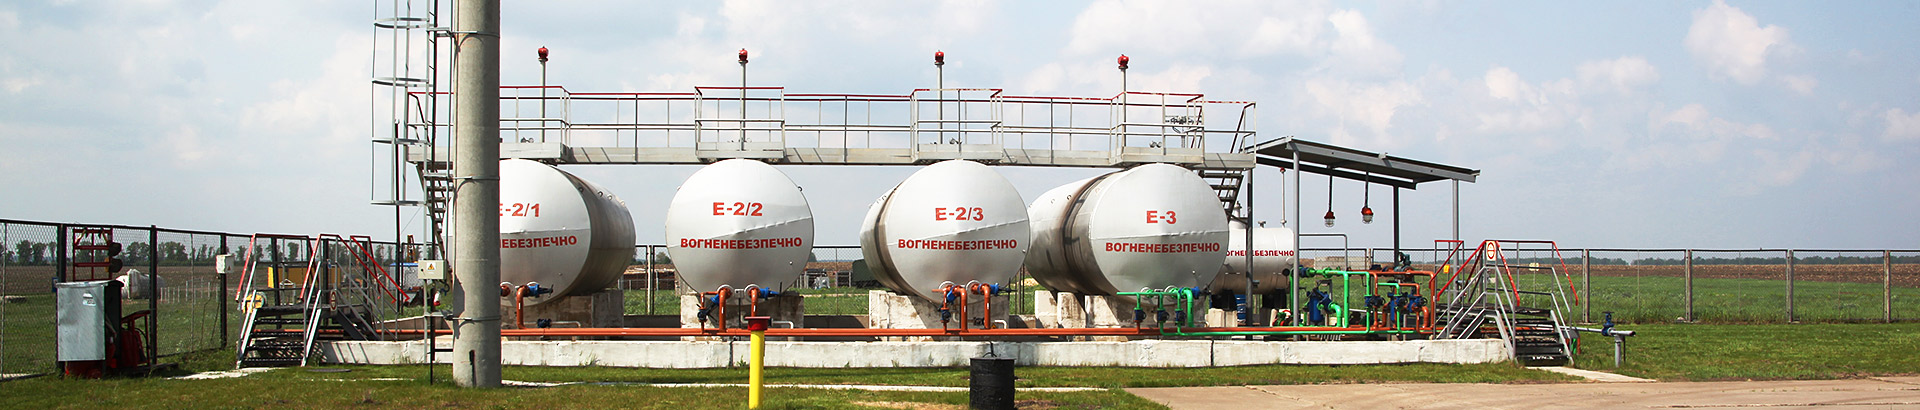 (Українська) Компанія Arab Energy Alliance UA пишається тим, що є нафтогазовою компанією з великими знаннями в галузі